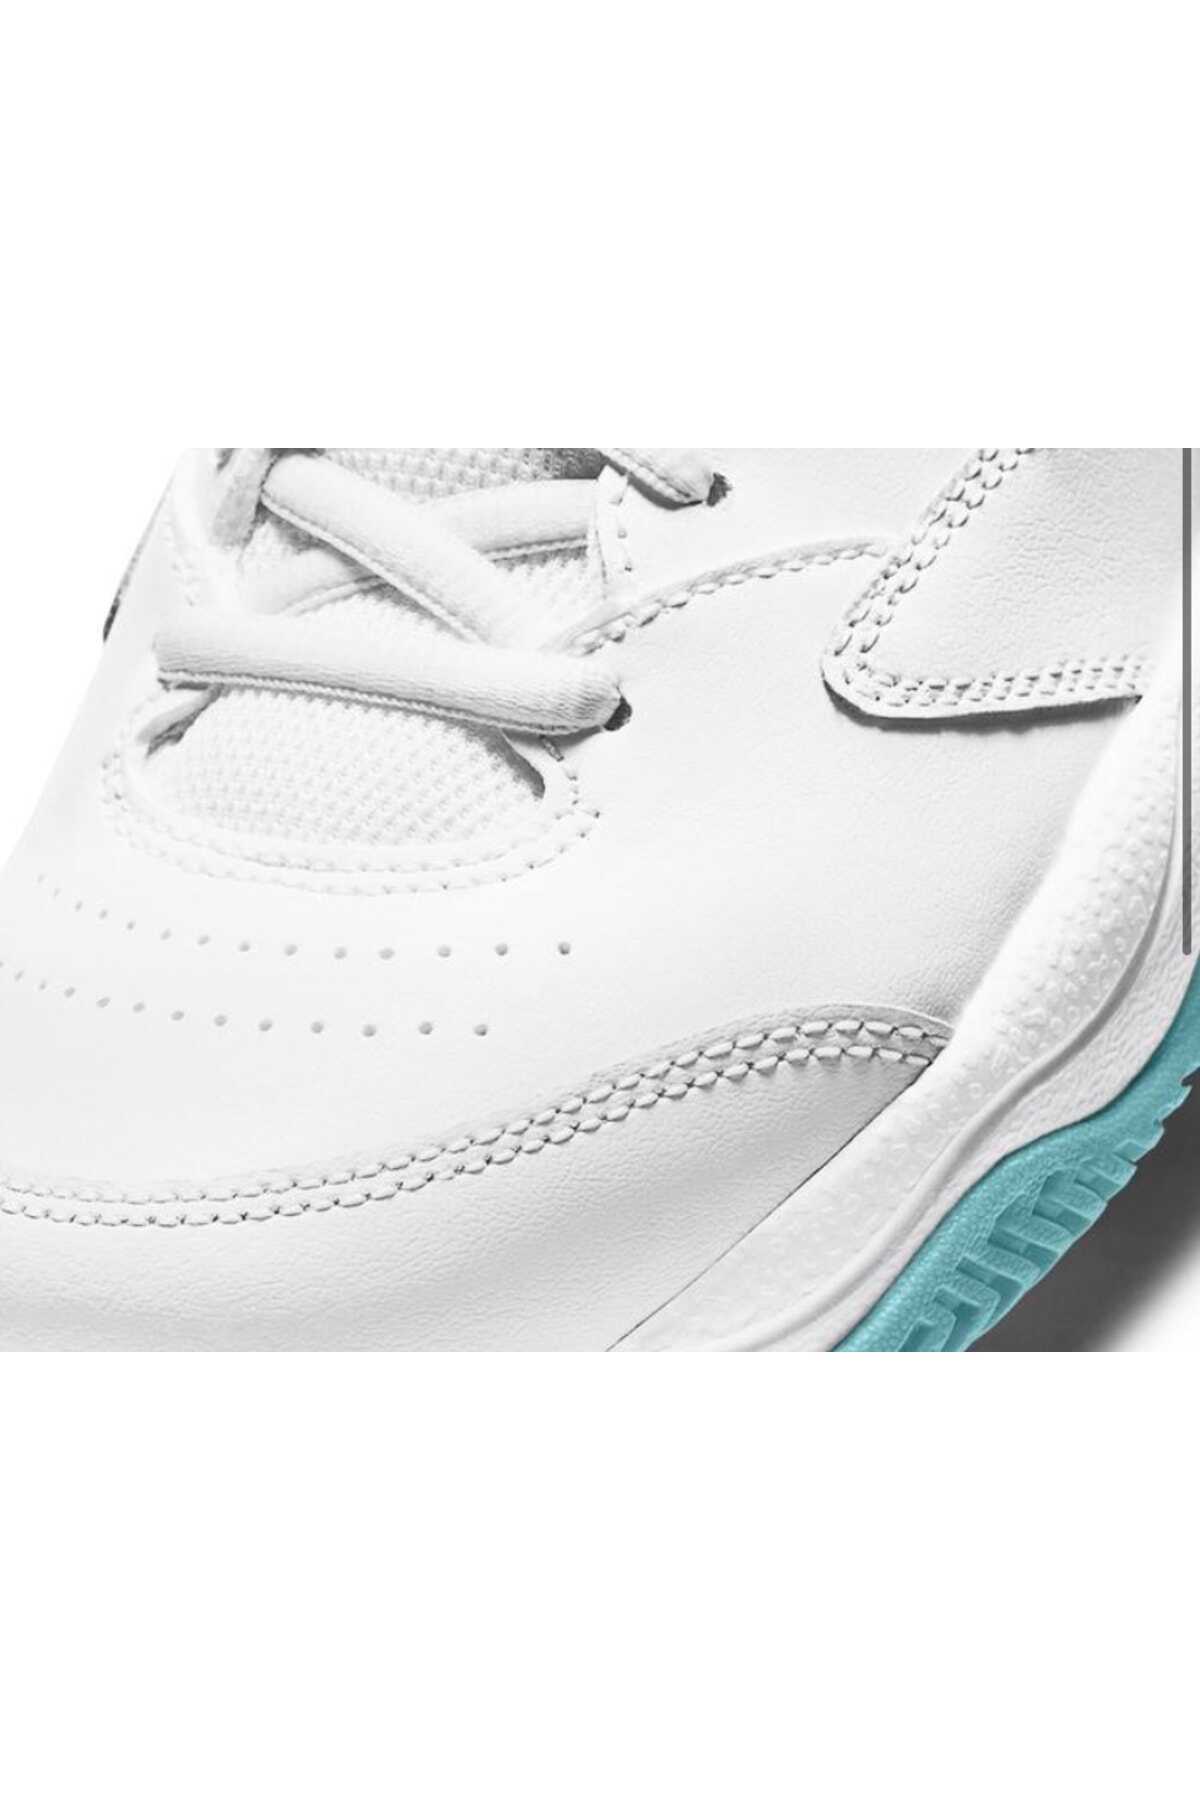 کفش تنیس زنانه مدل Court Lite 2 سفید برند Nike